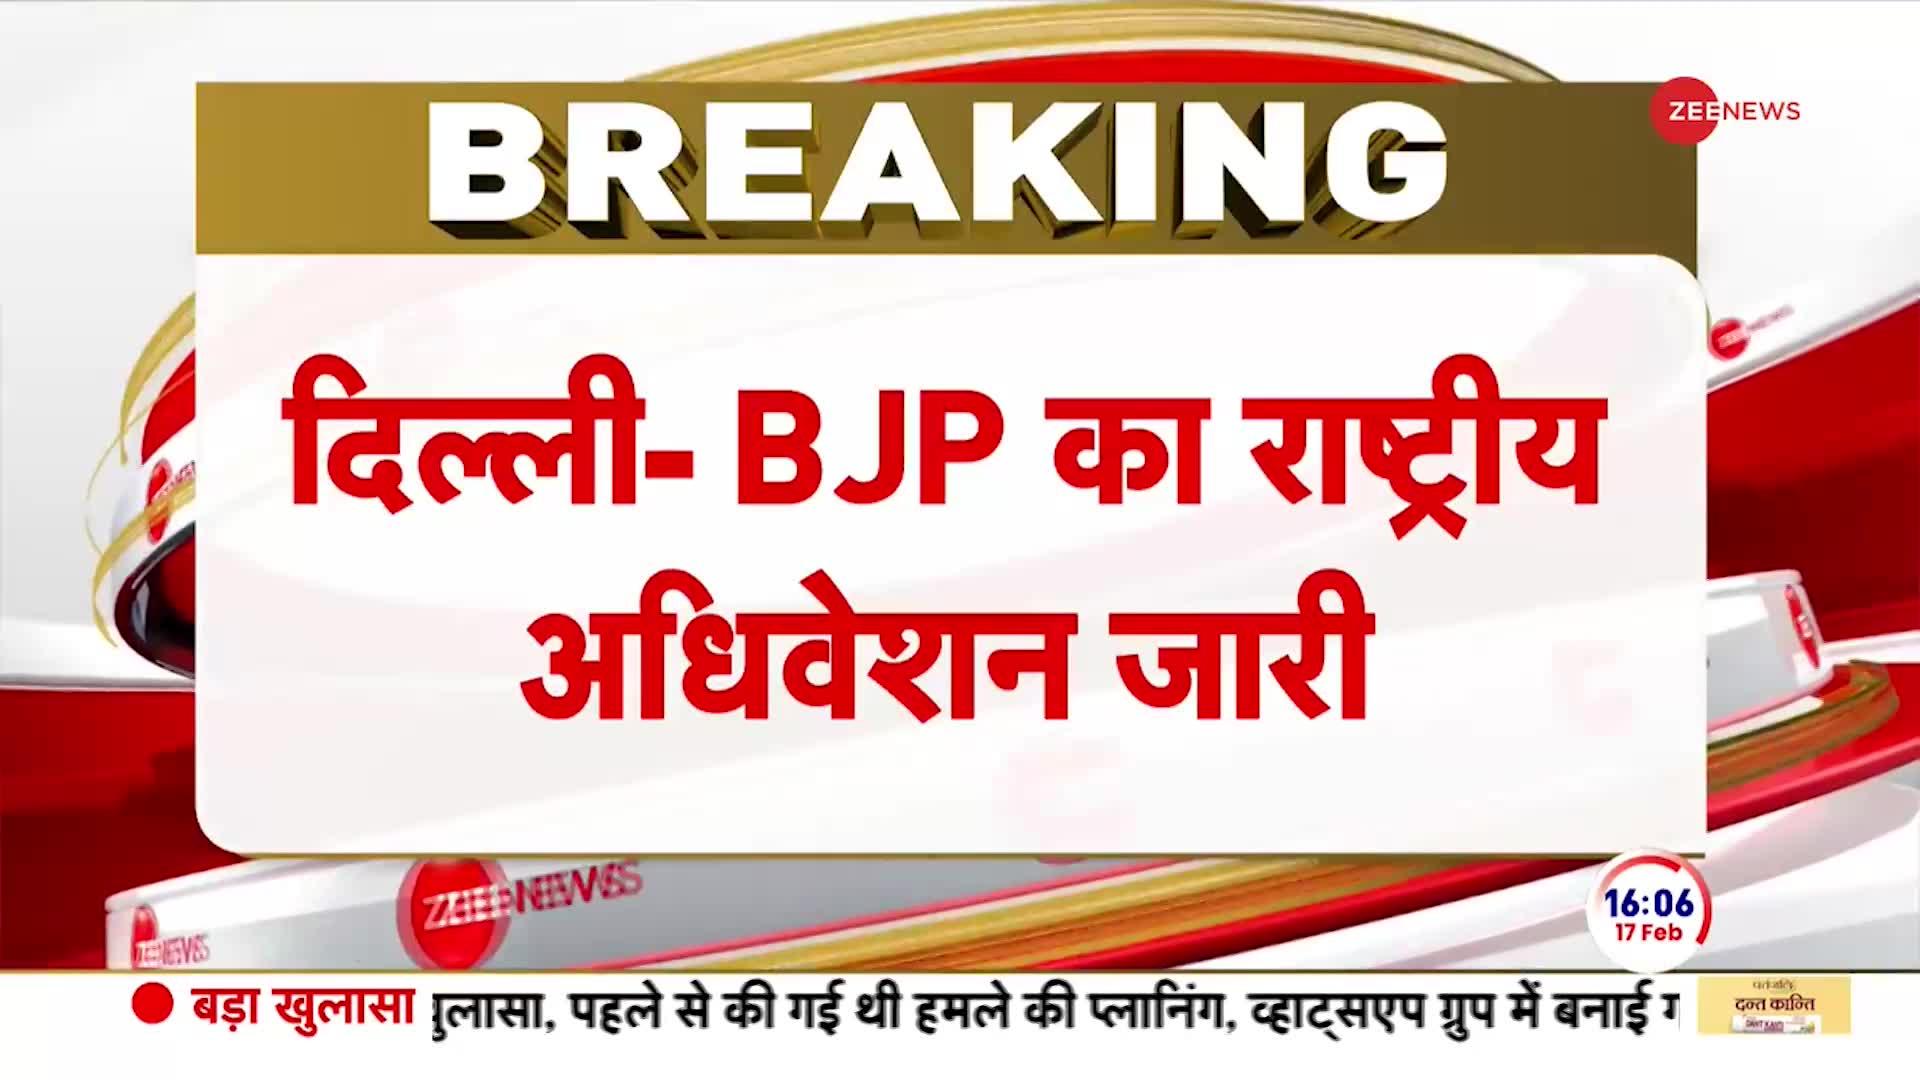 BJP's National convention: PM Modi ने बीजेपी के अधिवेशन में फहराया पार्टी का झंडा।